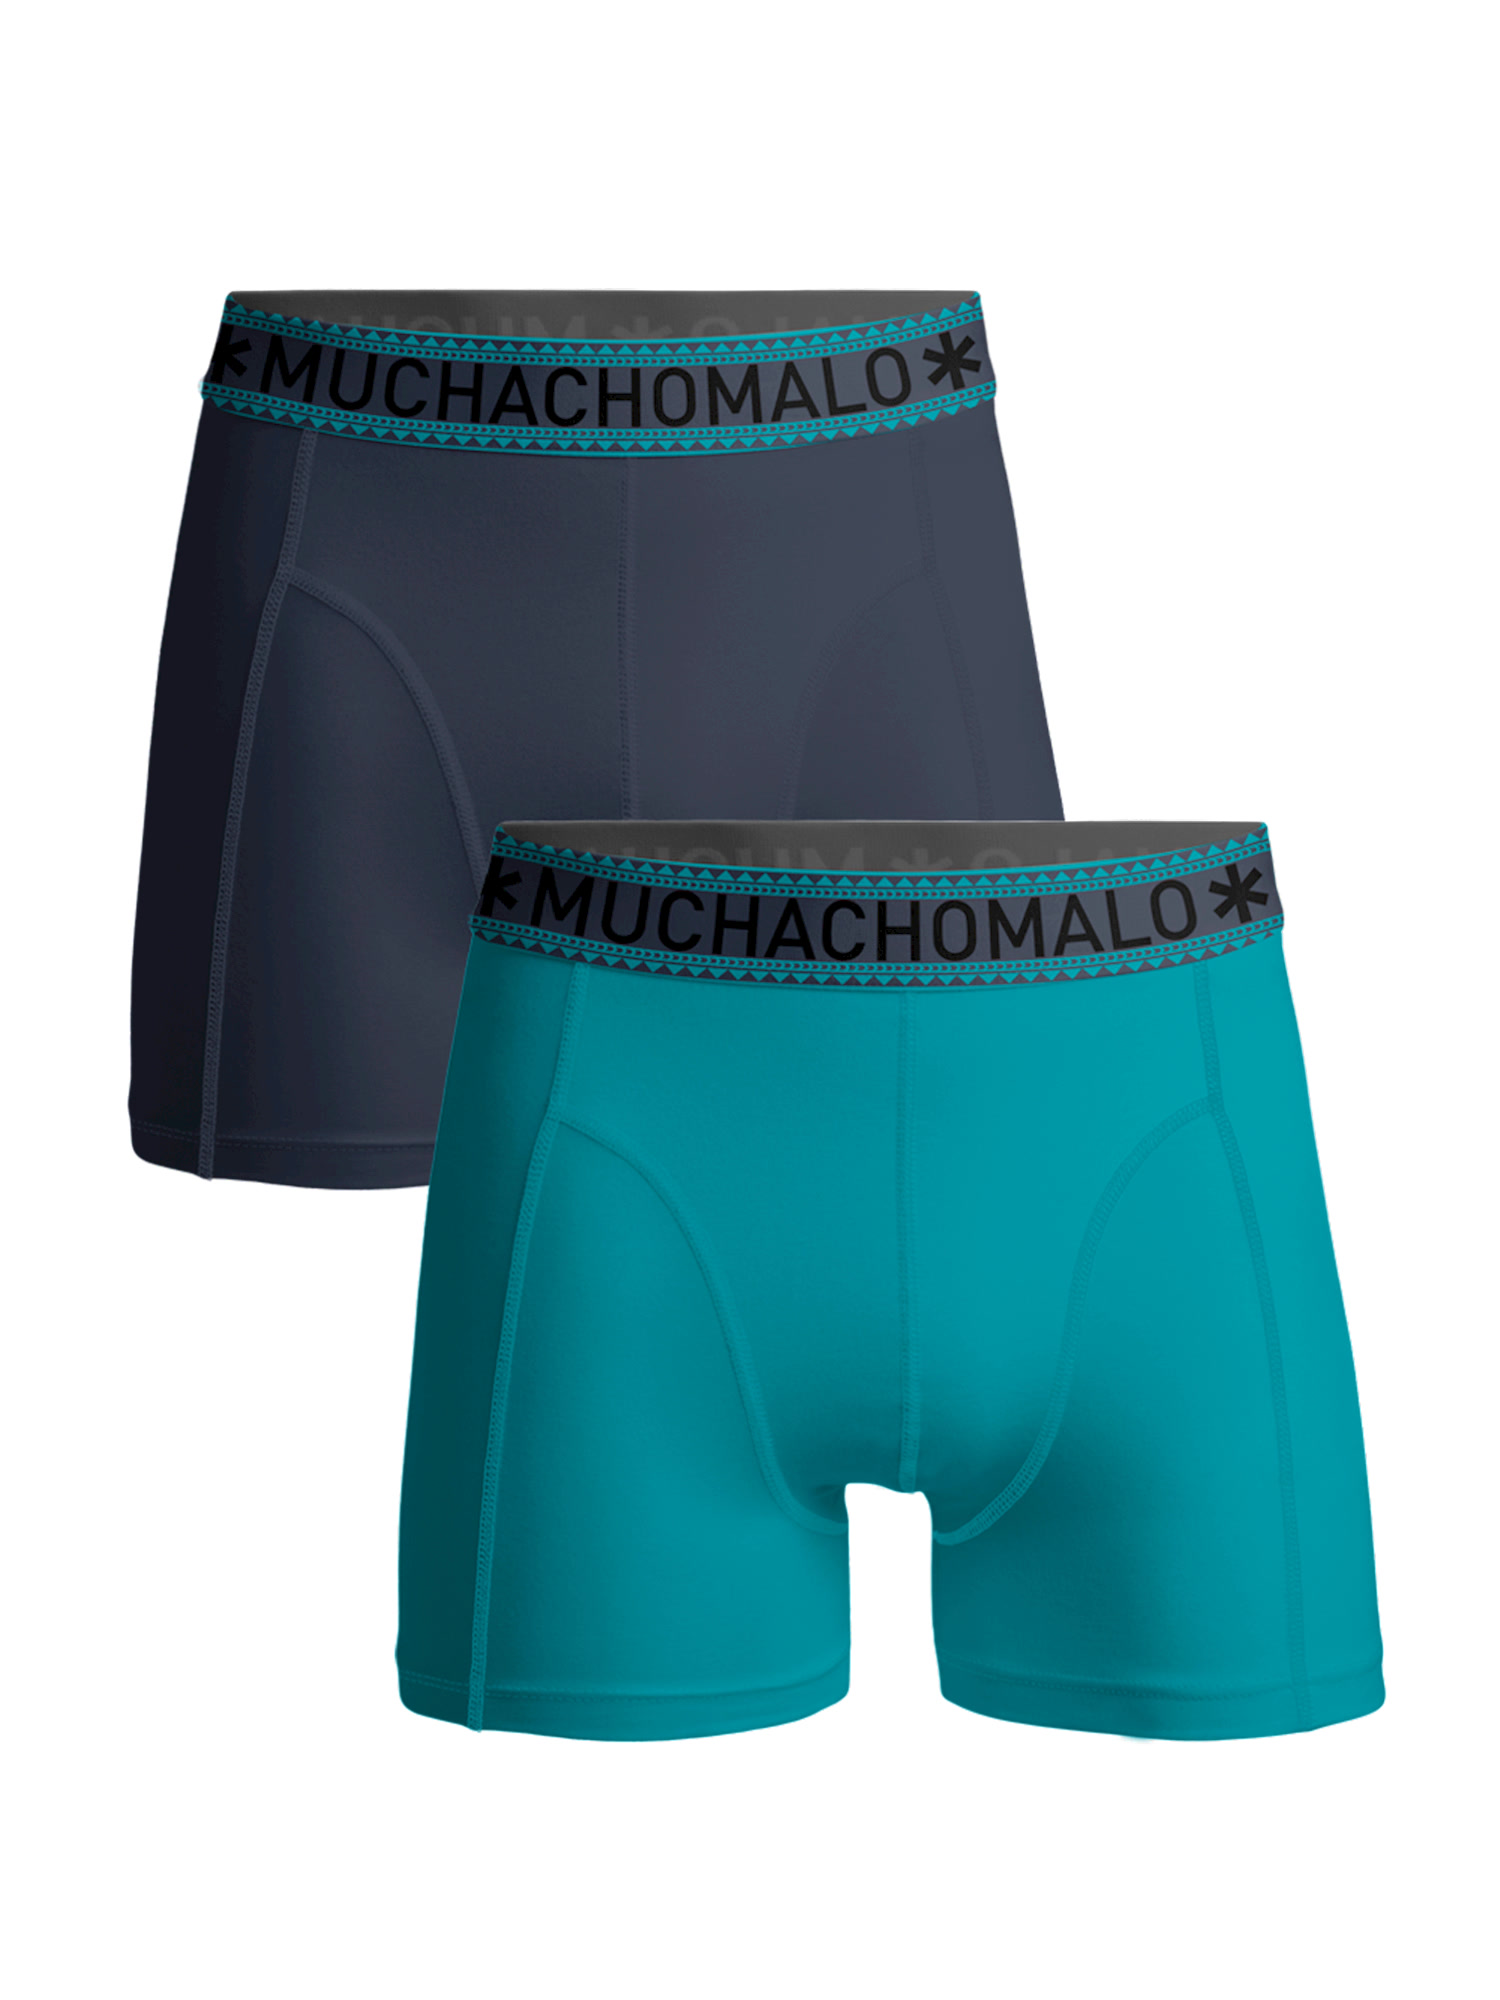 Боксеры Muchachomalo 2er-Set: Boxershorts, цвет Blue/Blue боксеры muchachomalo 5er set boxershorts цвет black blue blue green pink